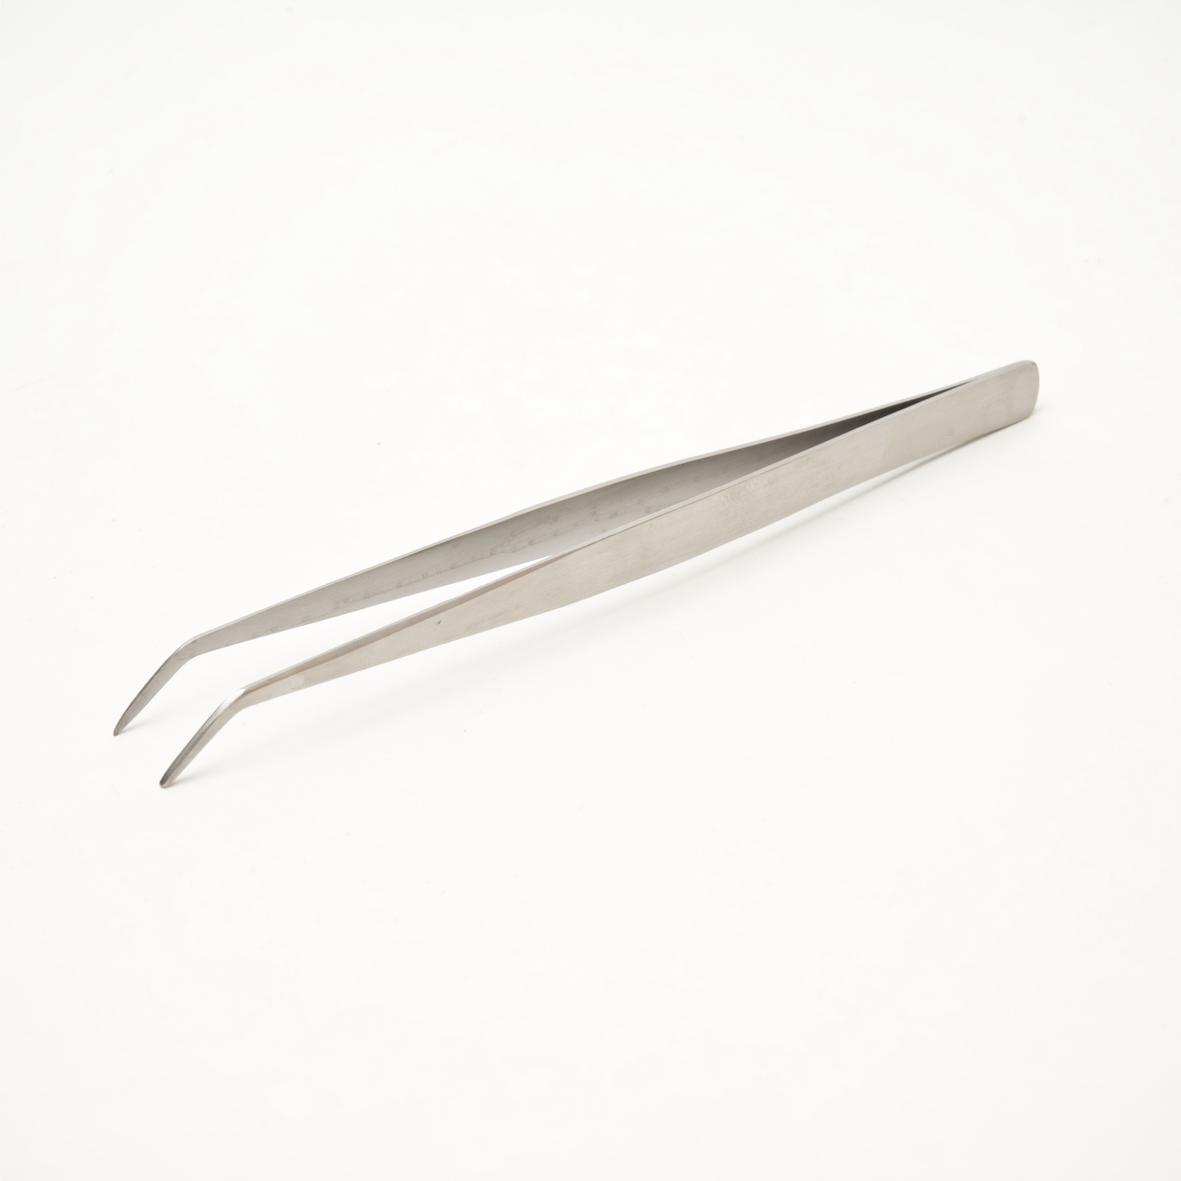 Craft Tweezers - 15cm